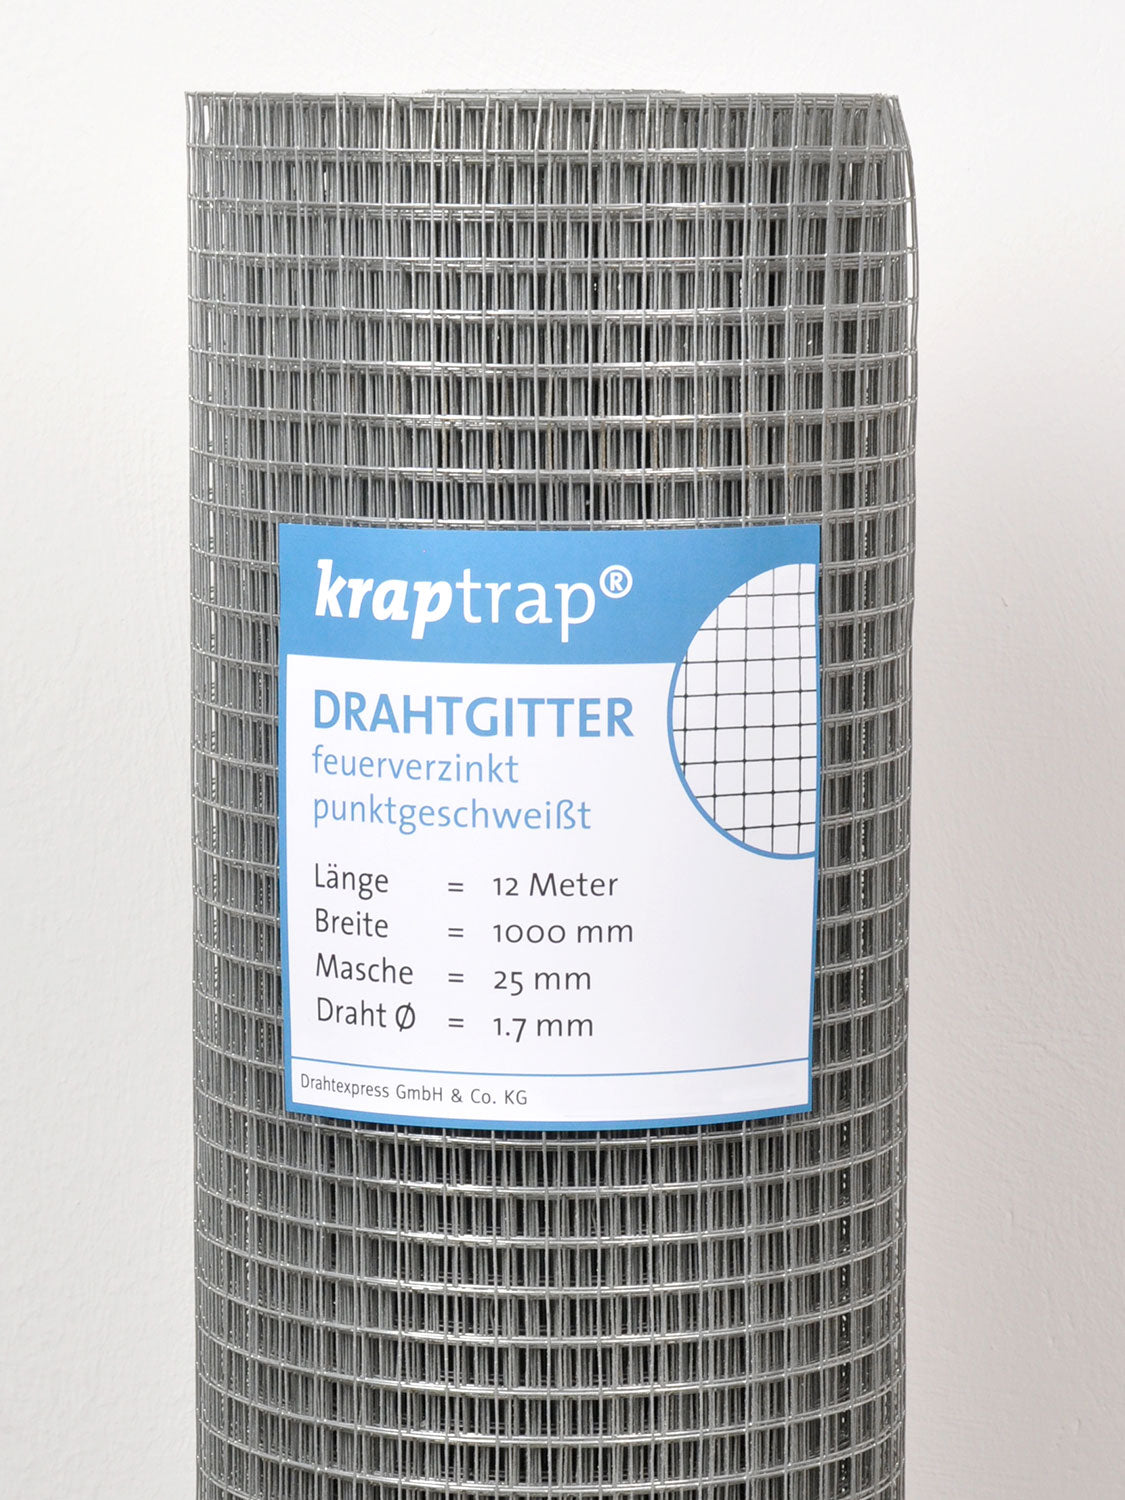 Kraptrap® Volierendraht Drahtgitter 25 mm Masche, 100 cm breit, 1,7mm Drahtstärke